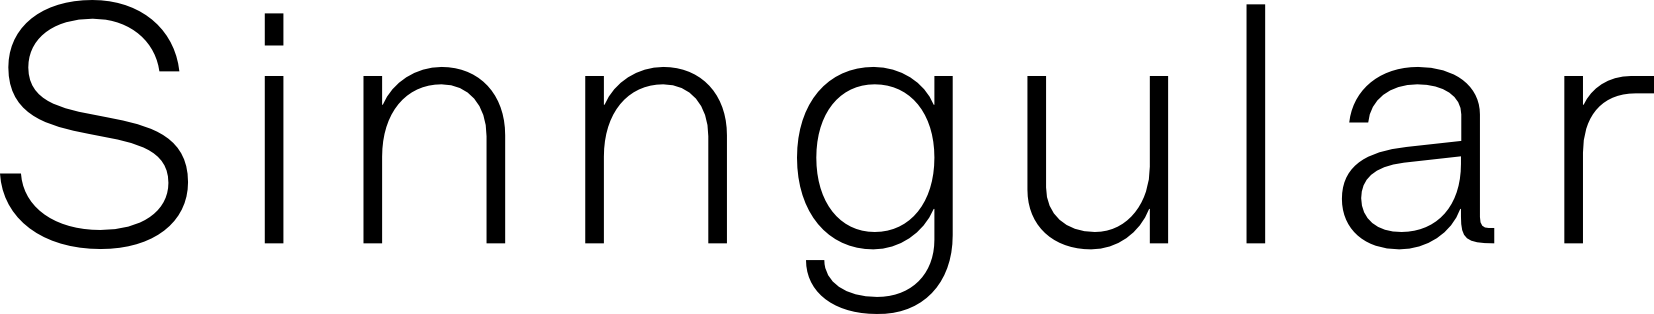 Logo Sinngular